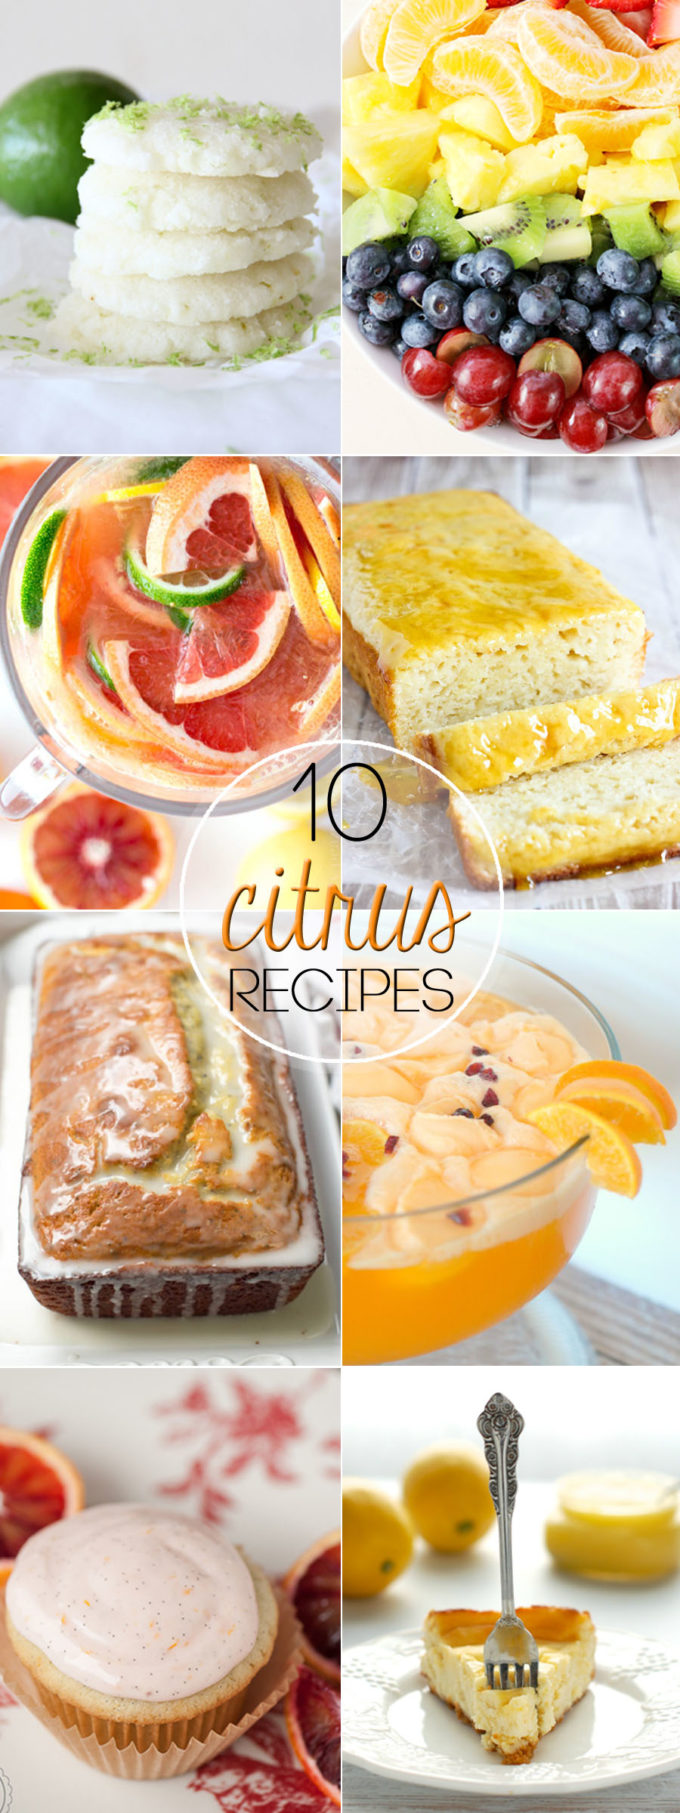 10-citrus-recipes-pinterest